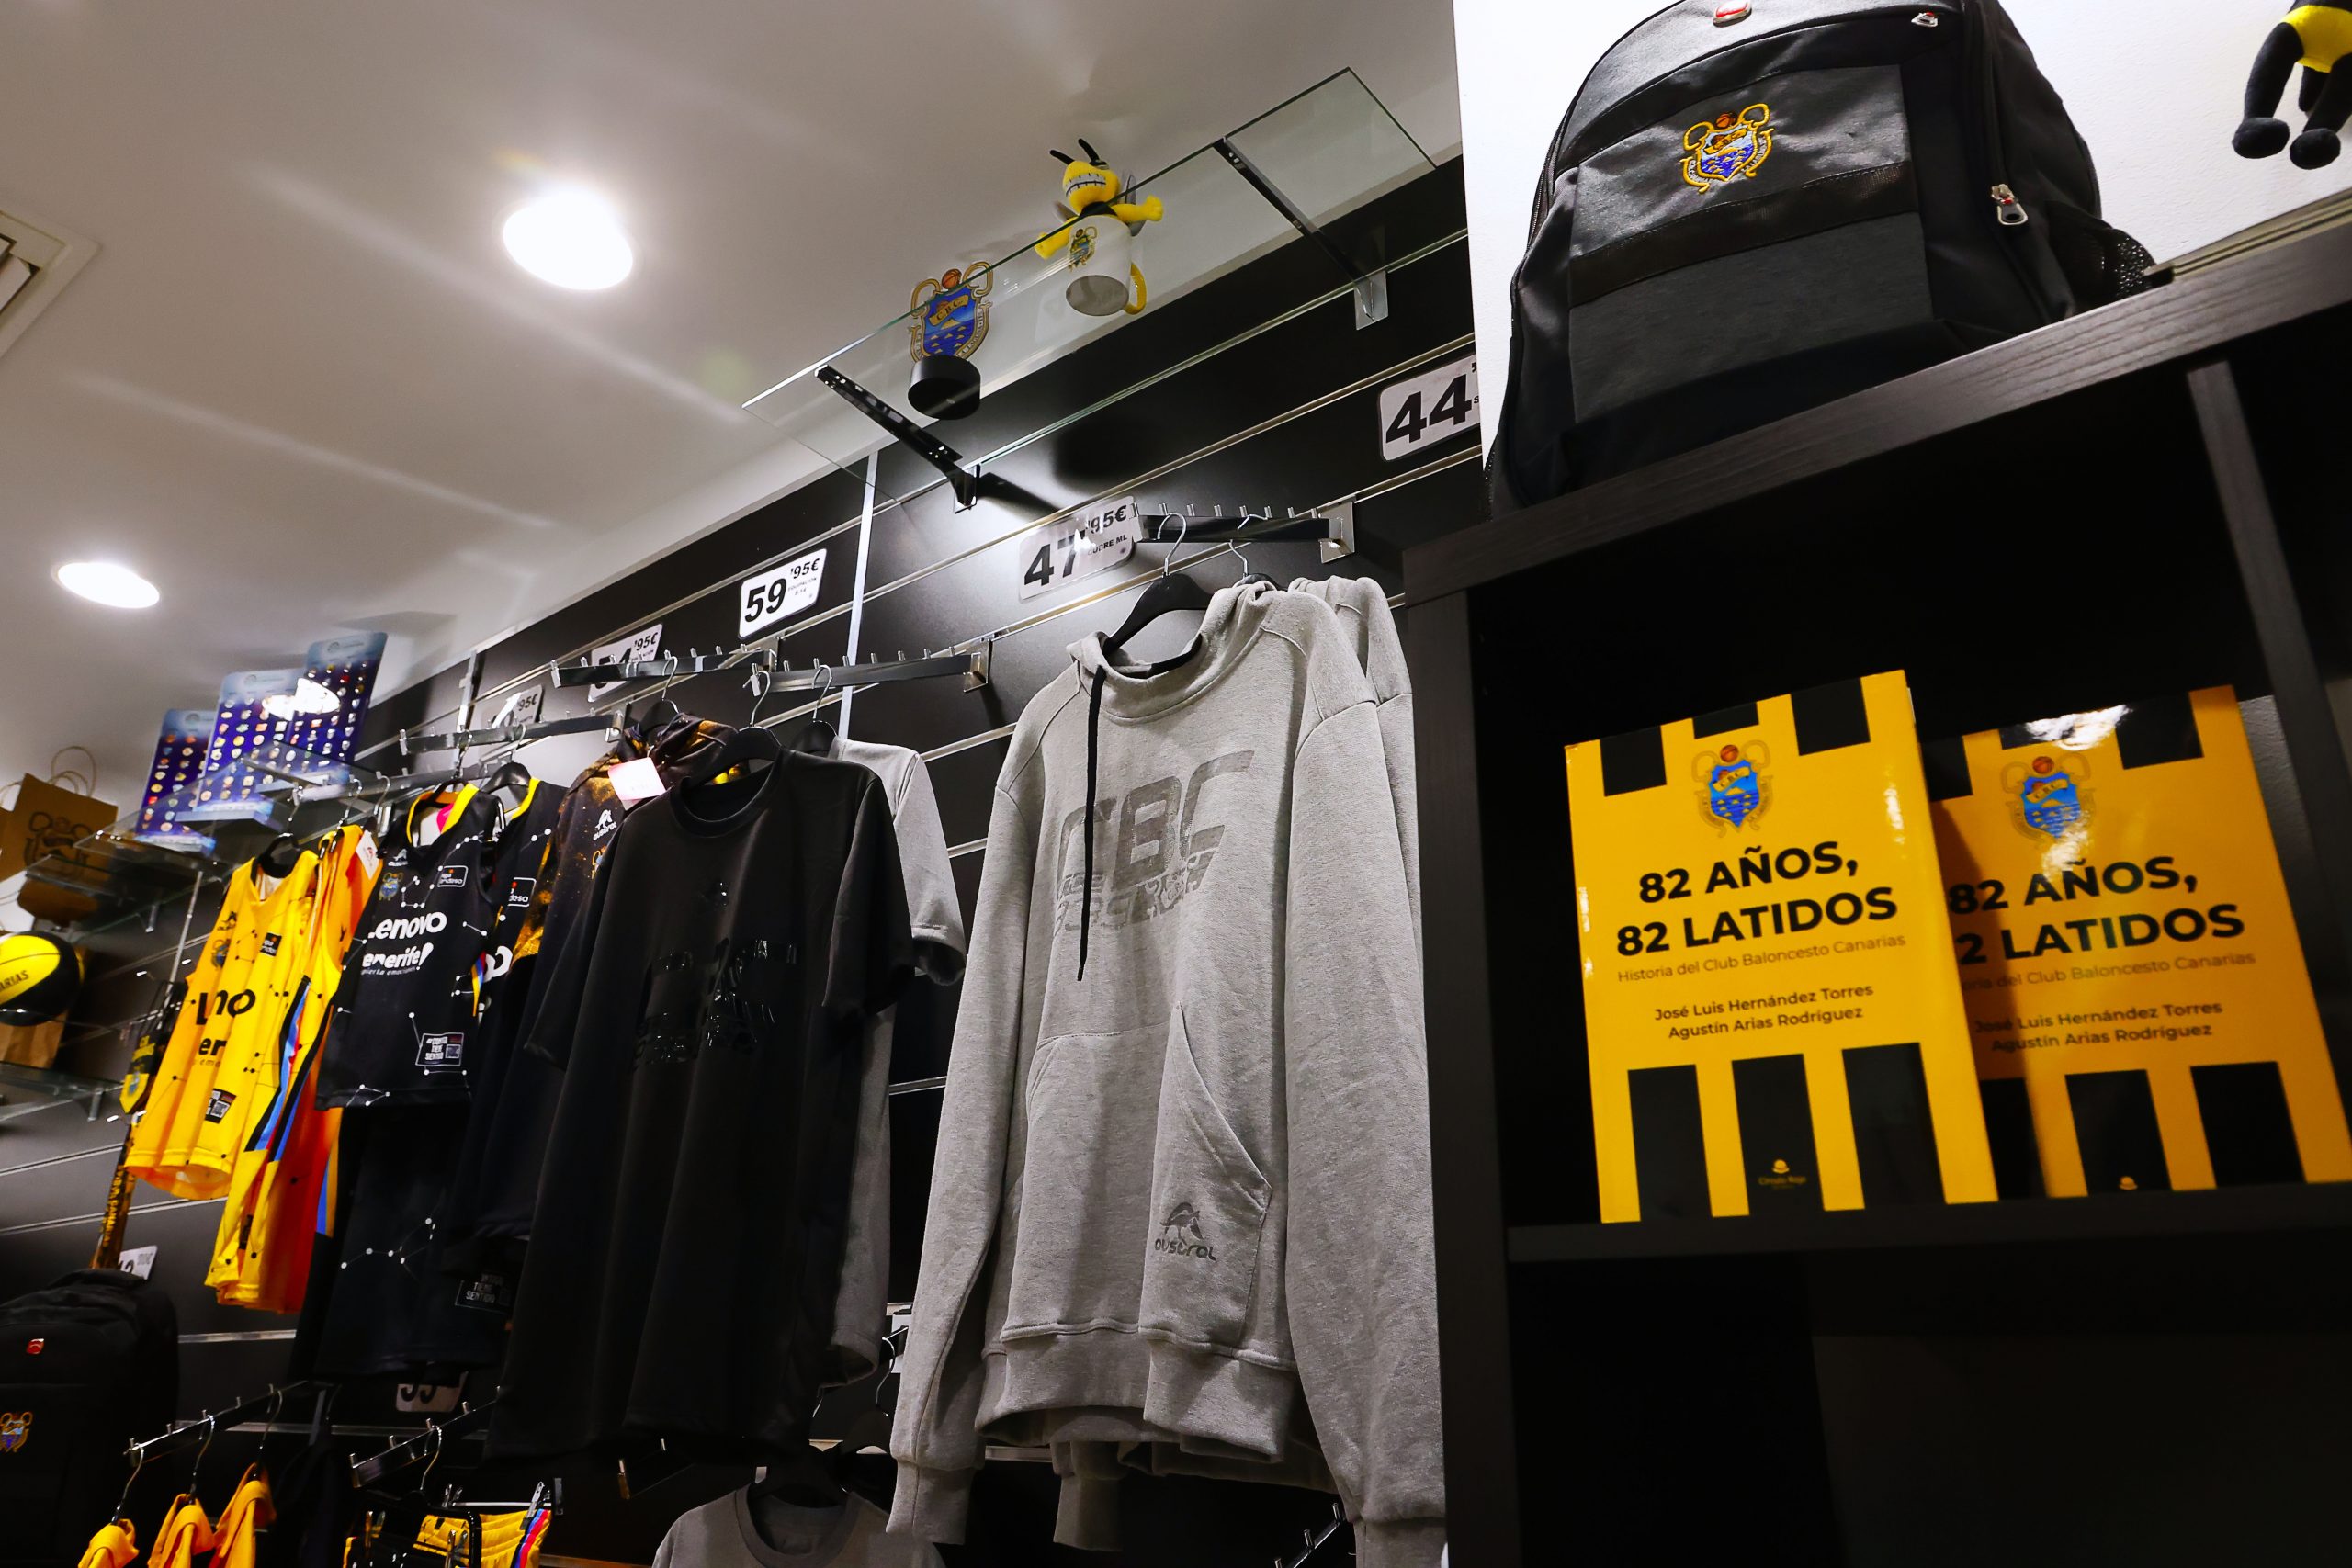 A la venta las nuevas equipaciones en la tienda oficial del club - Club  Baloncesto Gran Canaria